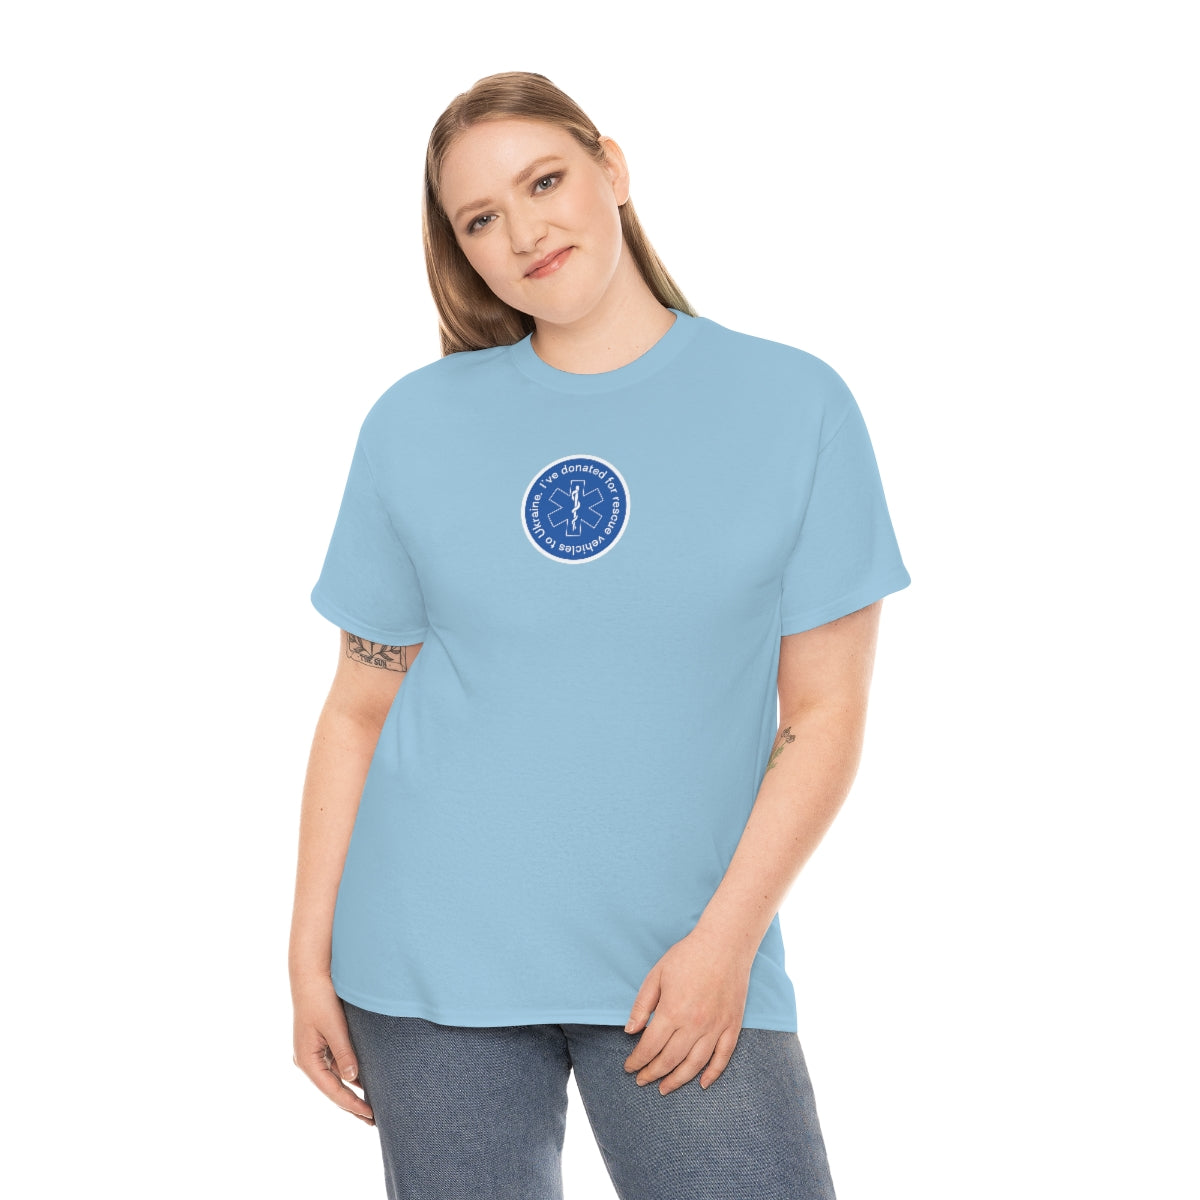 Donated Minimalistic - Unisex Tshirt